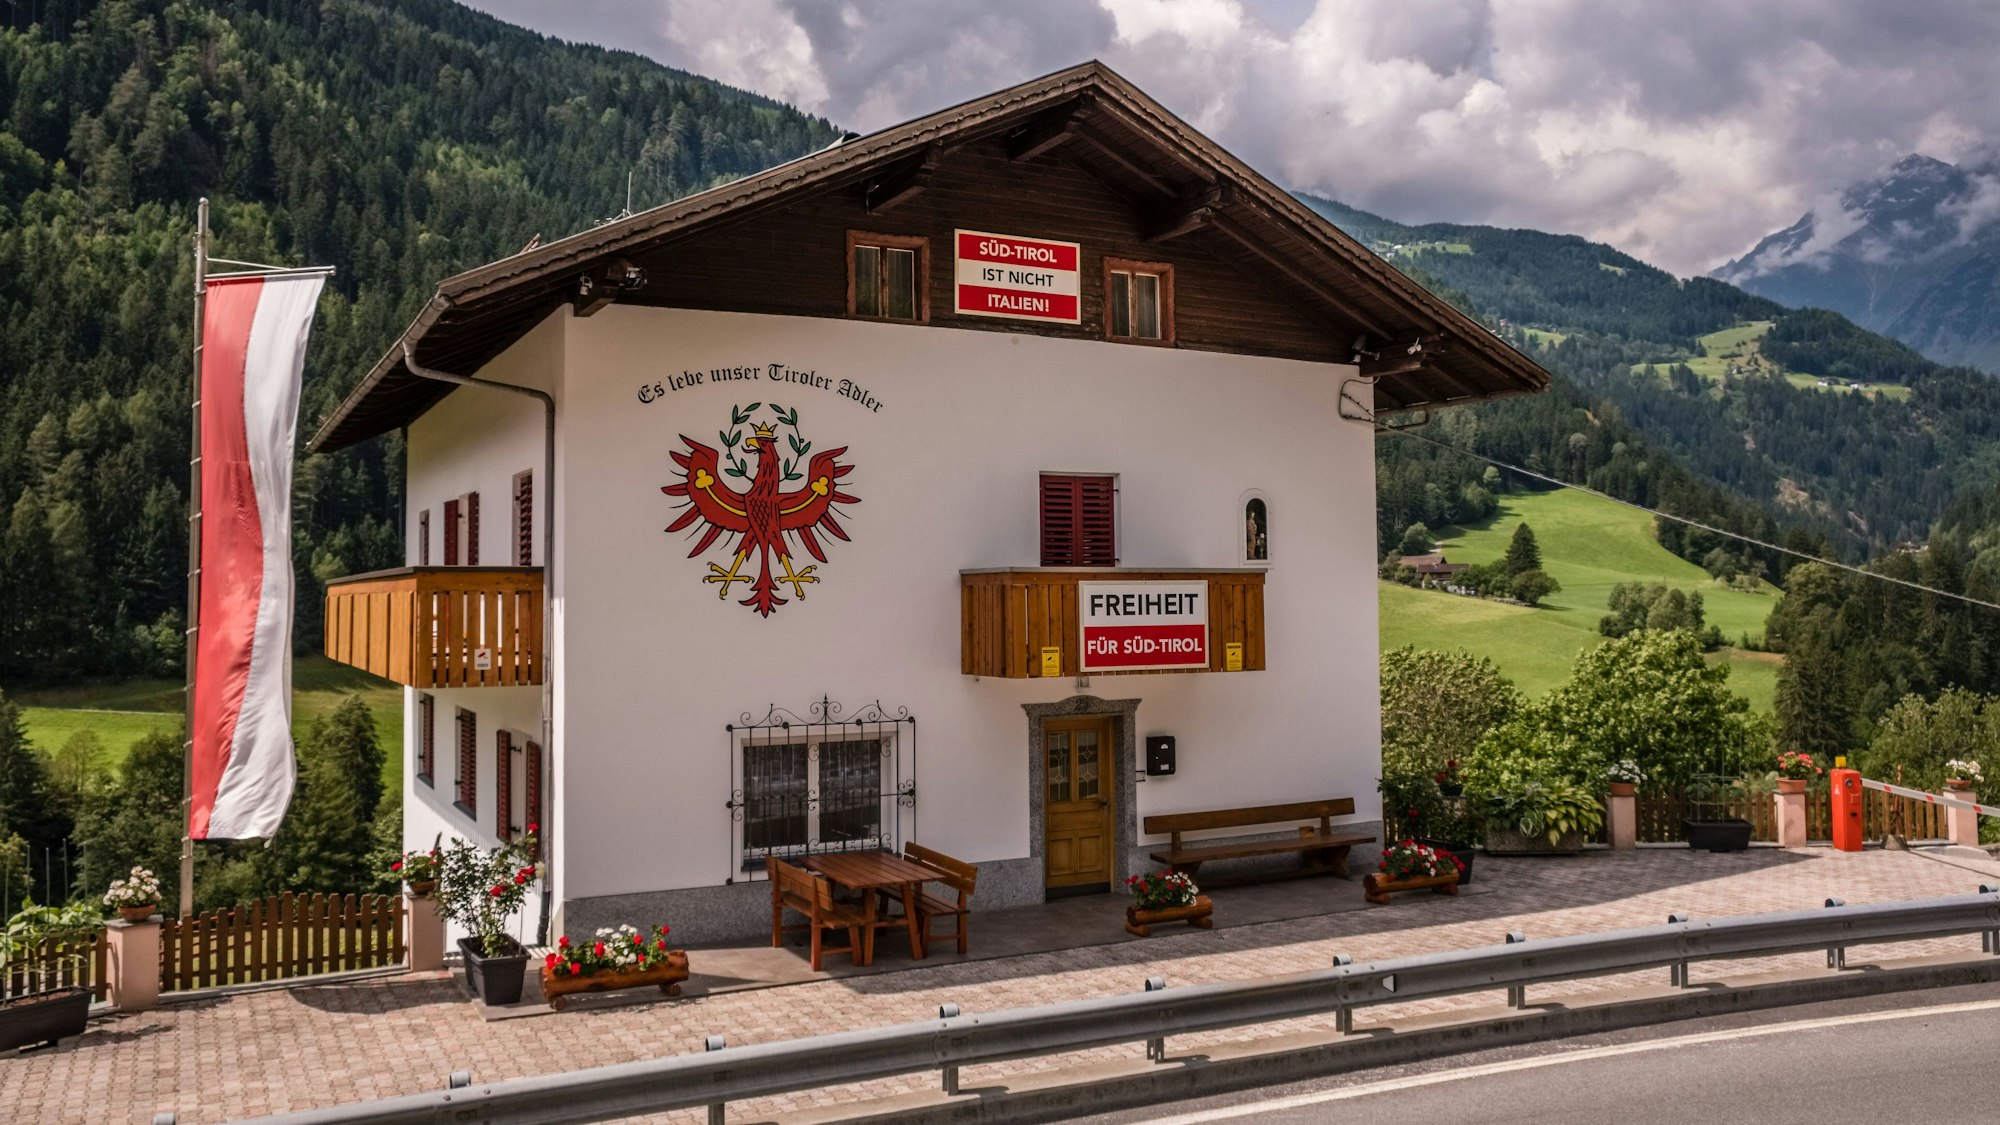 Ein Haus in Südtirol an dem Banner mit der Aufschrift "Freiheit für Südtirol" zu sehen sind.